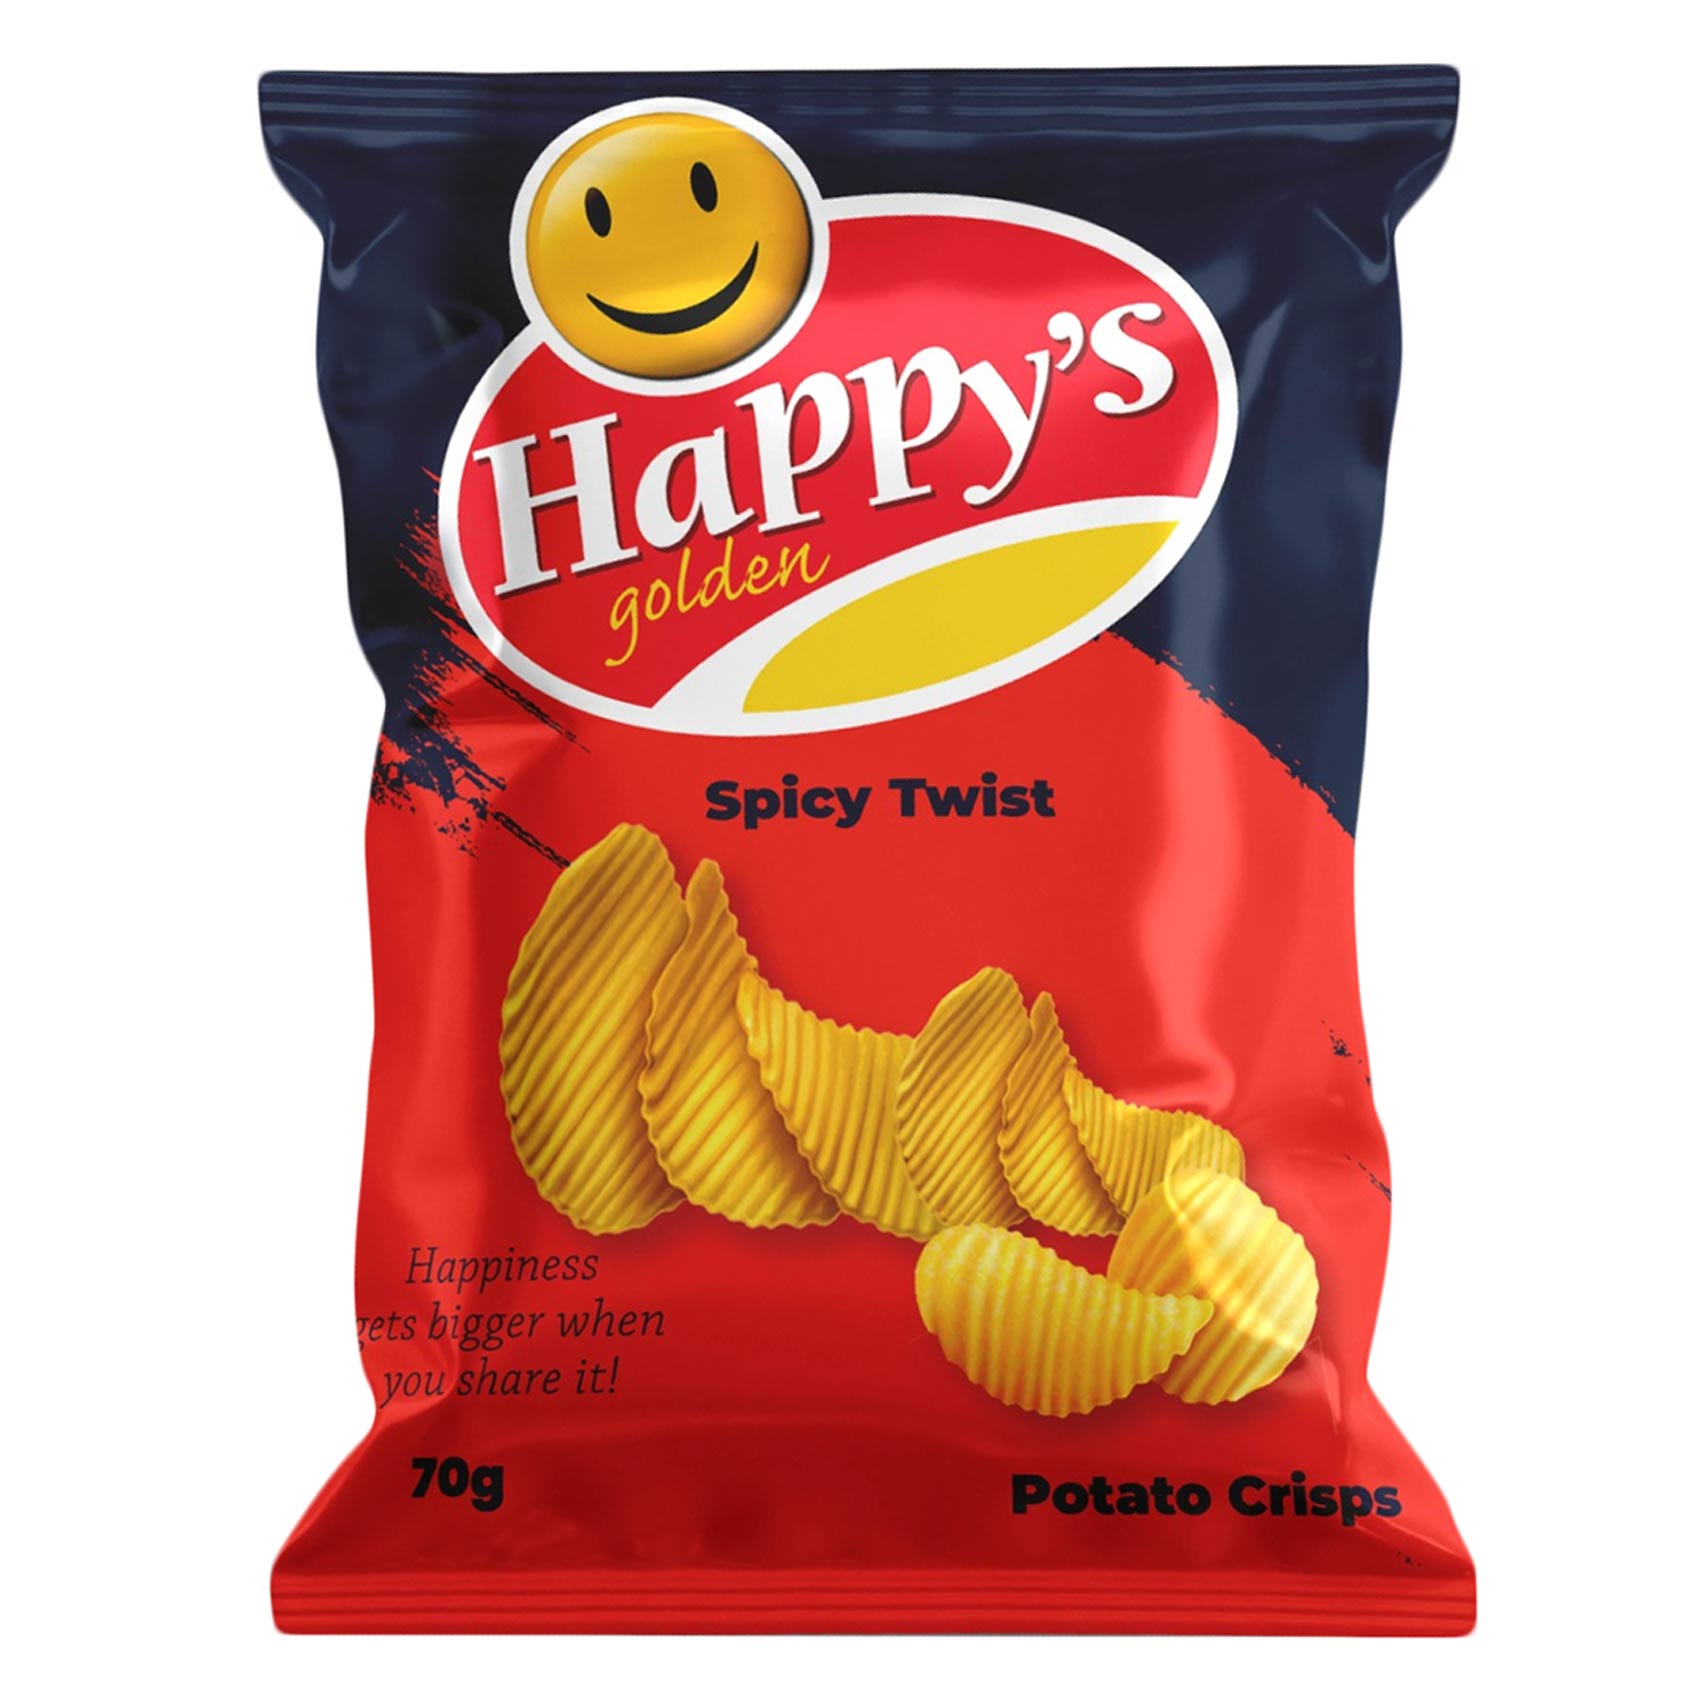 Happy&#39;s Golden Spicy Twist Potato Chips 70g